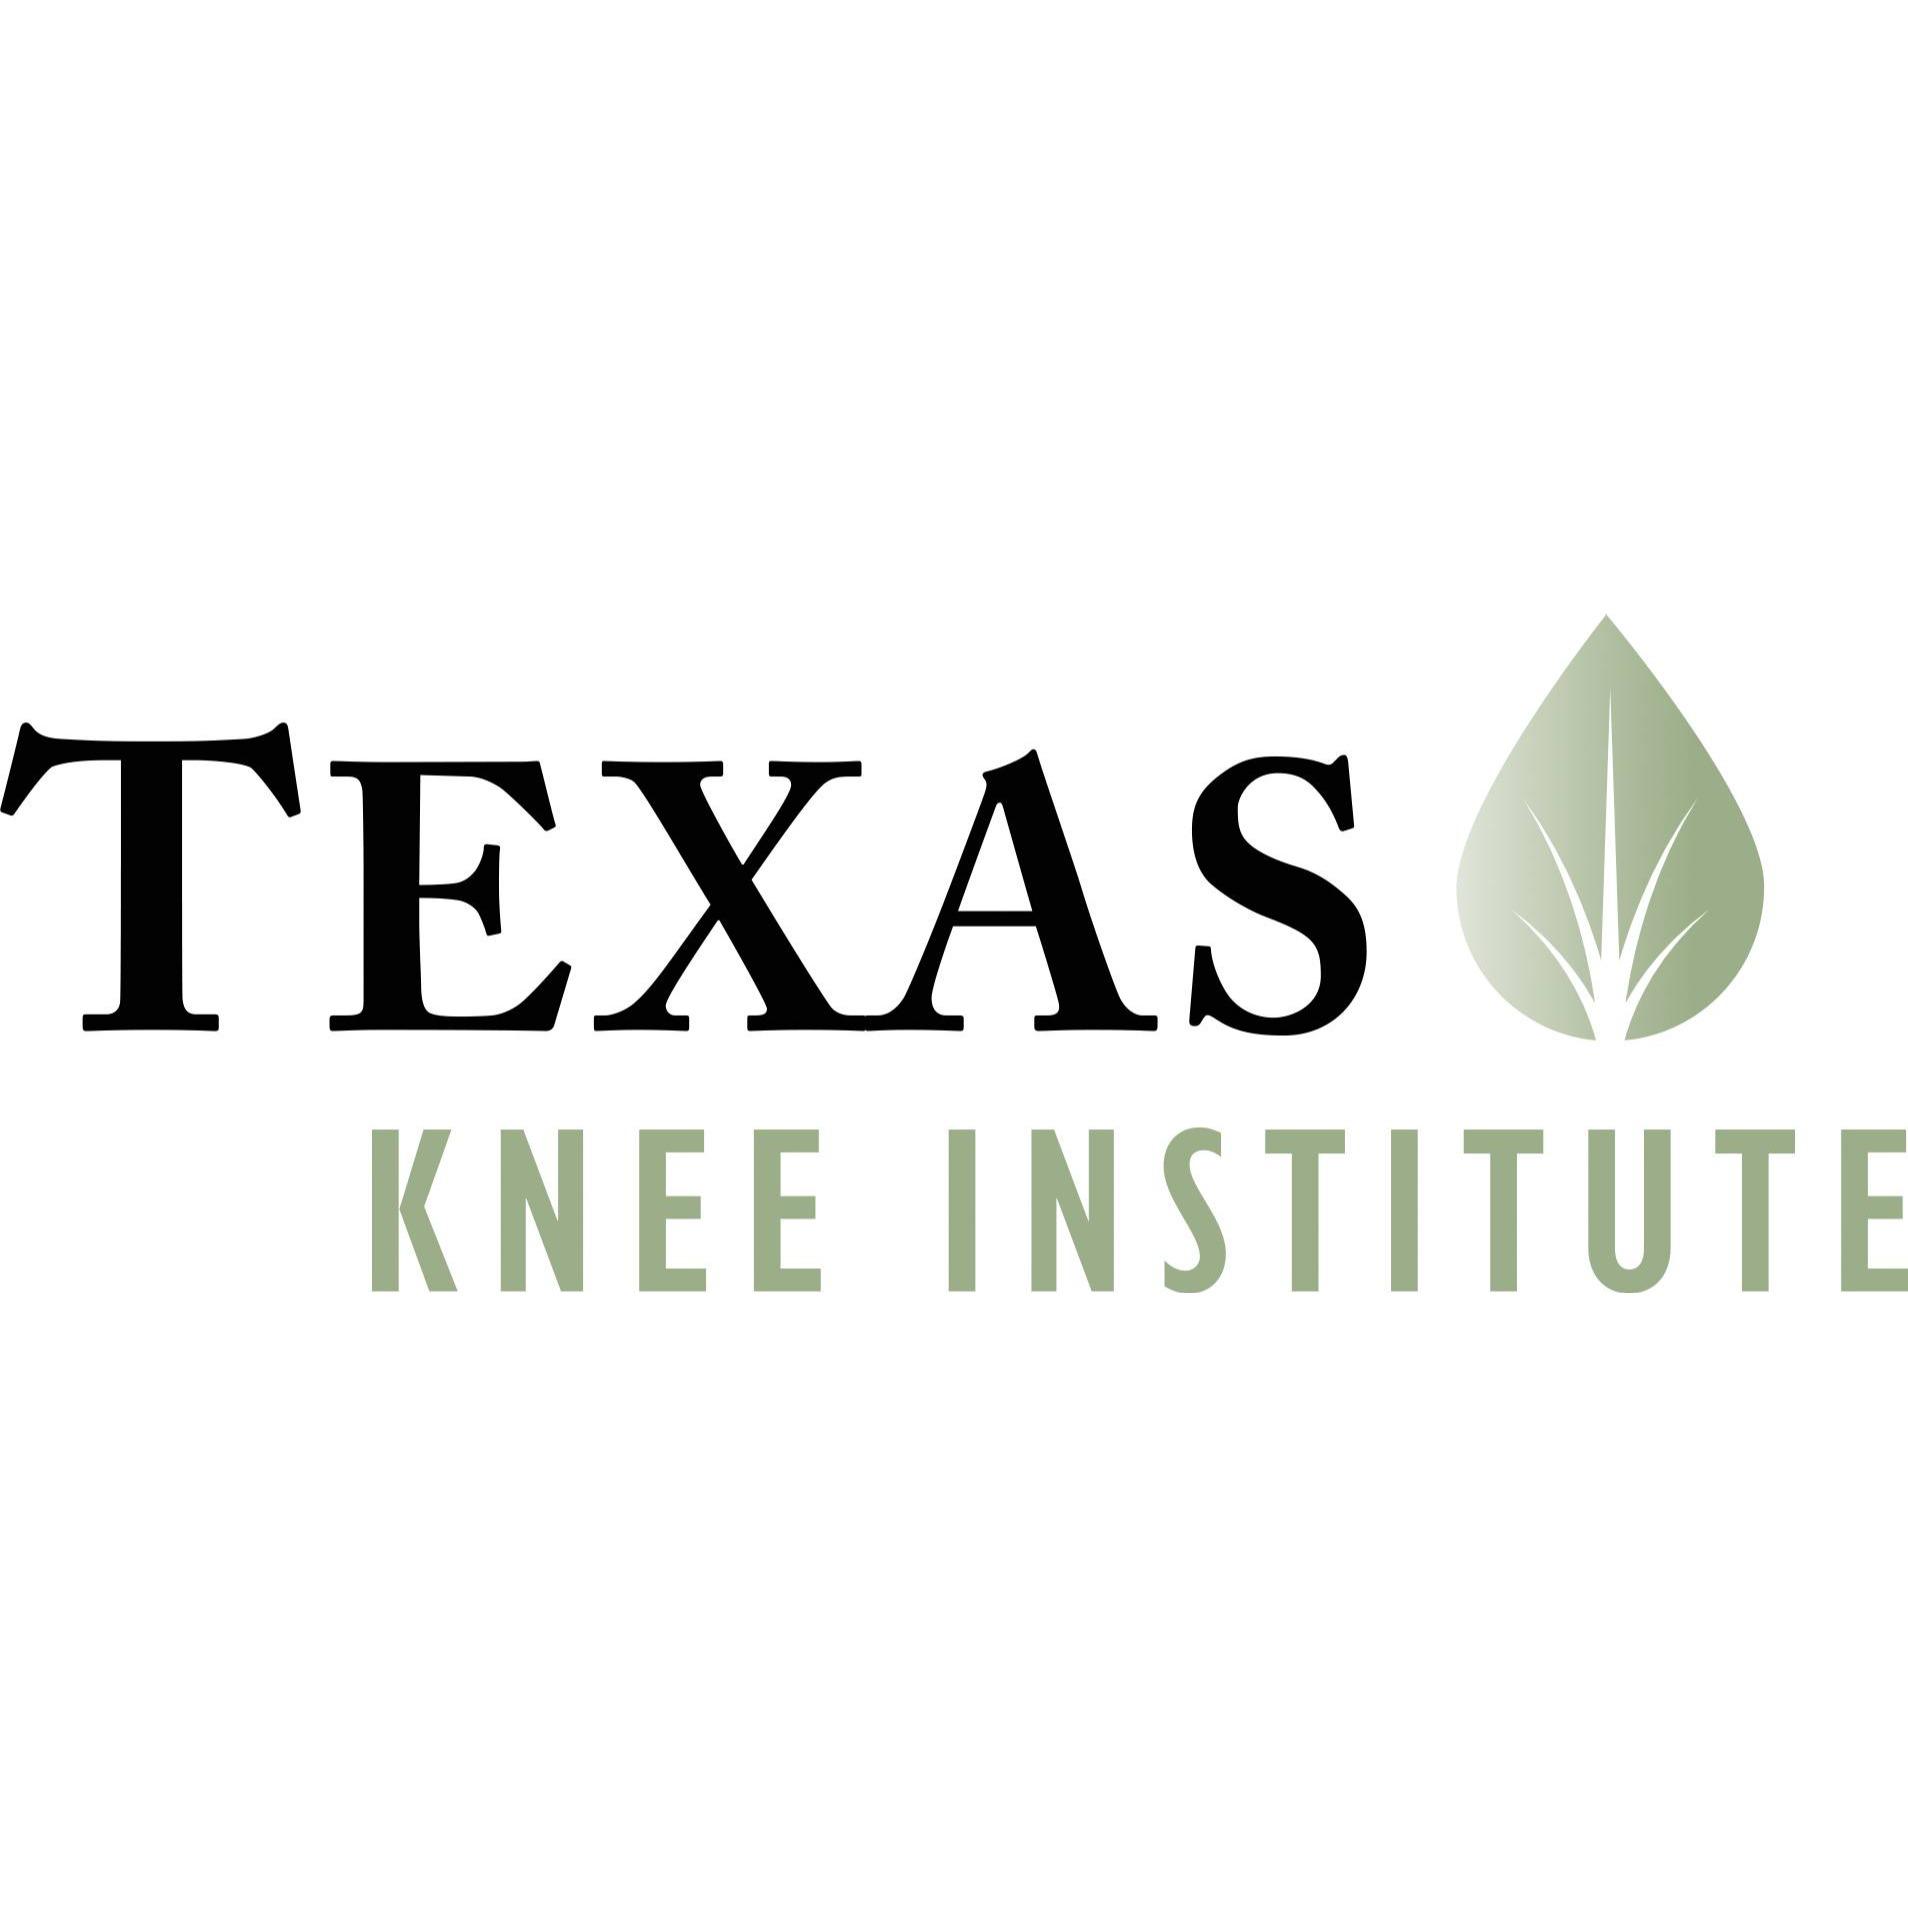 Texas knee Institute - Sugar Land